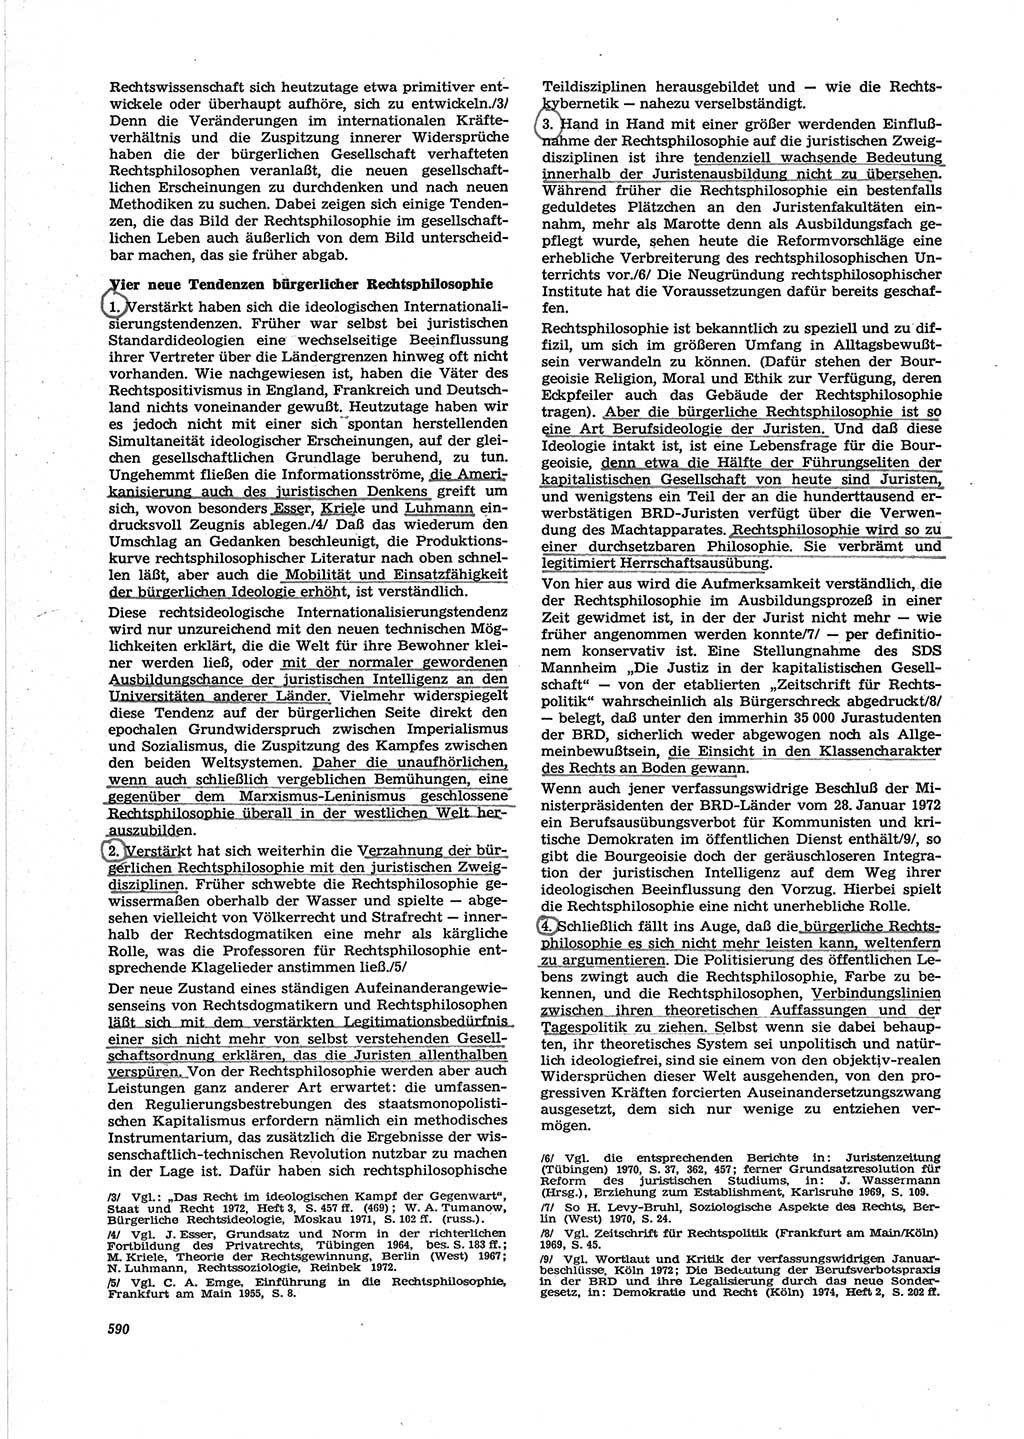 Neue Justiz (NJ), Zeitschrift für Recht und Rechtswissenschaft [Deutsche Demokratische Republik (DDR)], 28. Jahrgang 1974, Seite 590 (NJ DDR 1974, S. 590)